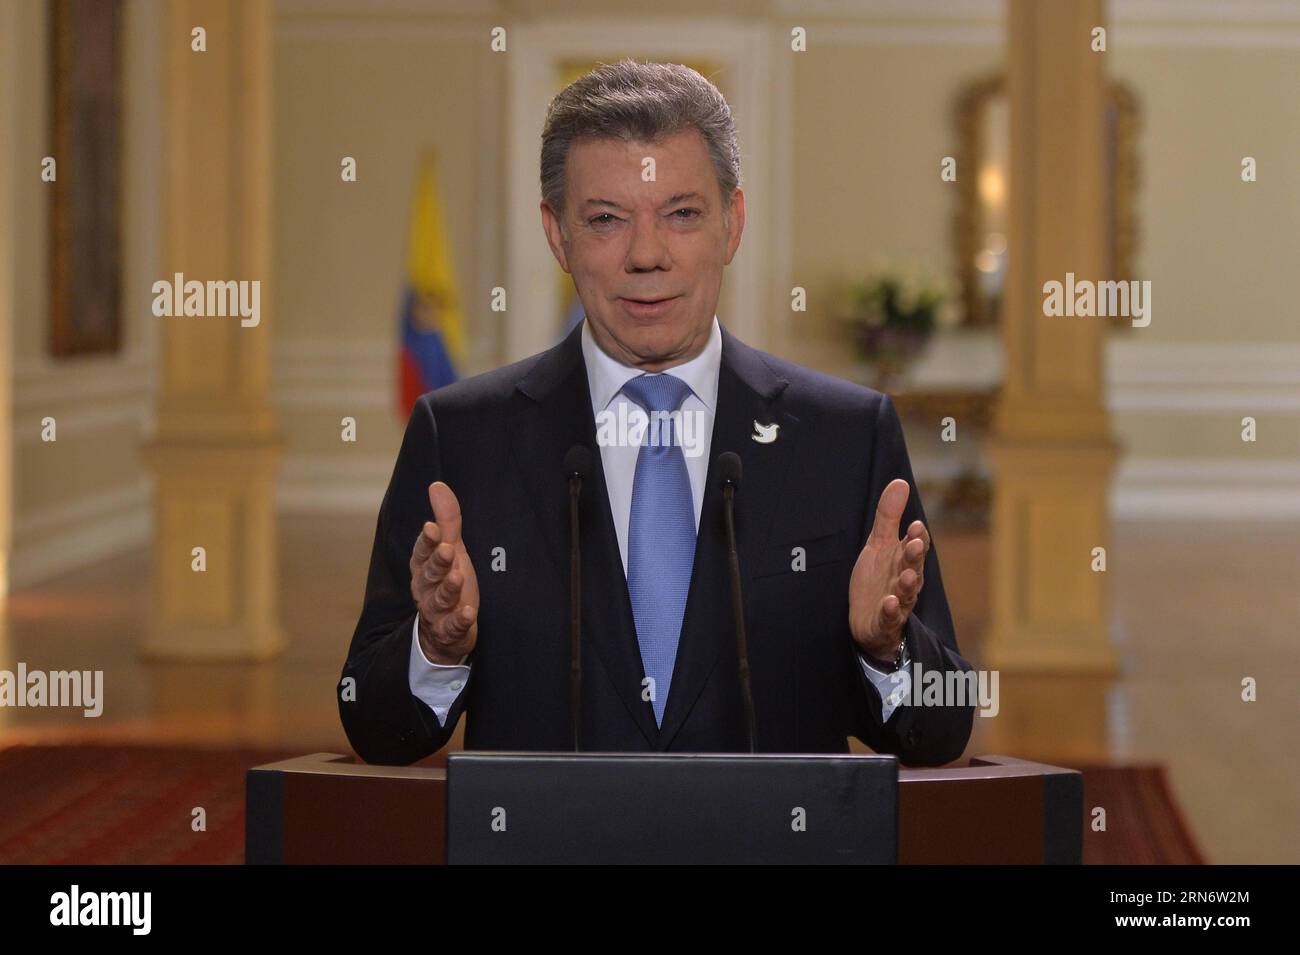 (150807) -- BOGOTA, 7. August 2015 -- Bild des kolumbianischen Präsidenten Juan Manuel Santos, der am 6. August 2015 in Bogota, Kolumbien, eine Rede hielt. Der kolumbianische Präsident Juan Manuel Santos sagte am Donnerstag, dass während seiner fünfjährigen Regierungszeit die Verbrechen von höherem Rang auf ein historisches Niveau zurückgegangen seien, aber er erkannte an, dass dies nicht genug sei und die Behörden die organisierte Kriminalität, Mafias und Straßenverbrechen vorrangig bekämpfen. Juan Pablo Bello/Kolumbiens Vorsitz) KOLUMBIEN-BOGOTA-POLITICS-SANTOS CESARCARRIONNCJDTM PUBLICATI Stockfoto